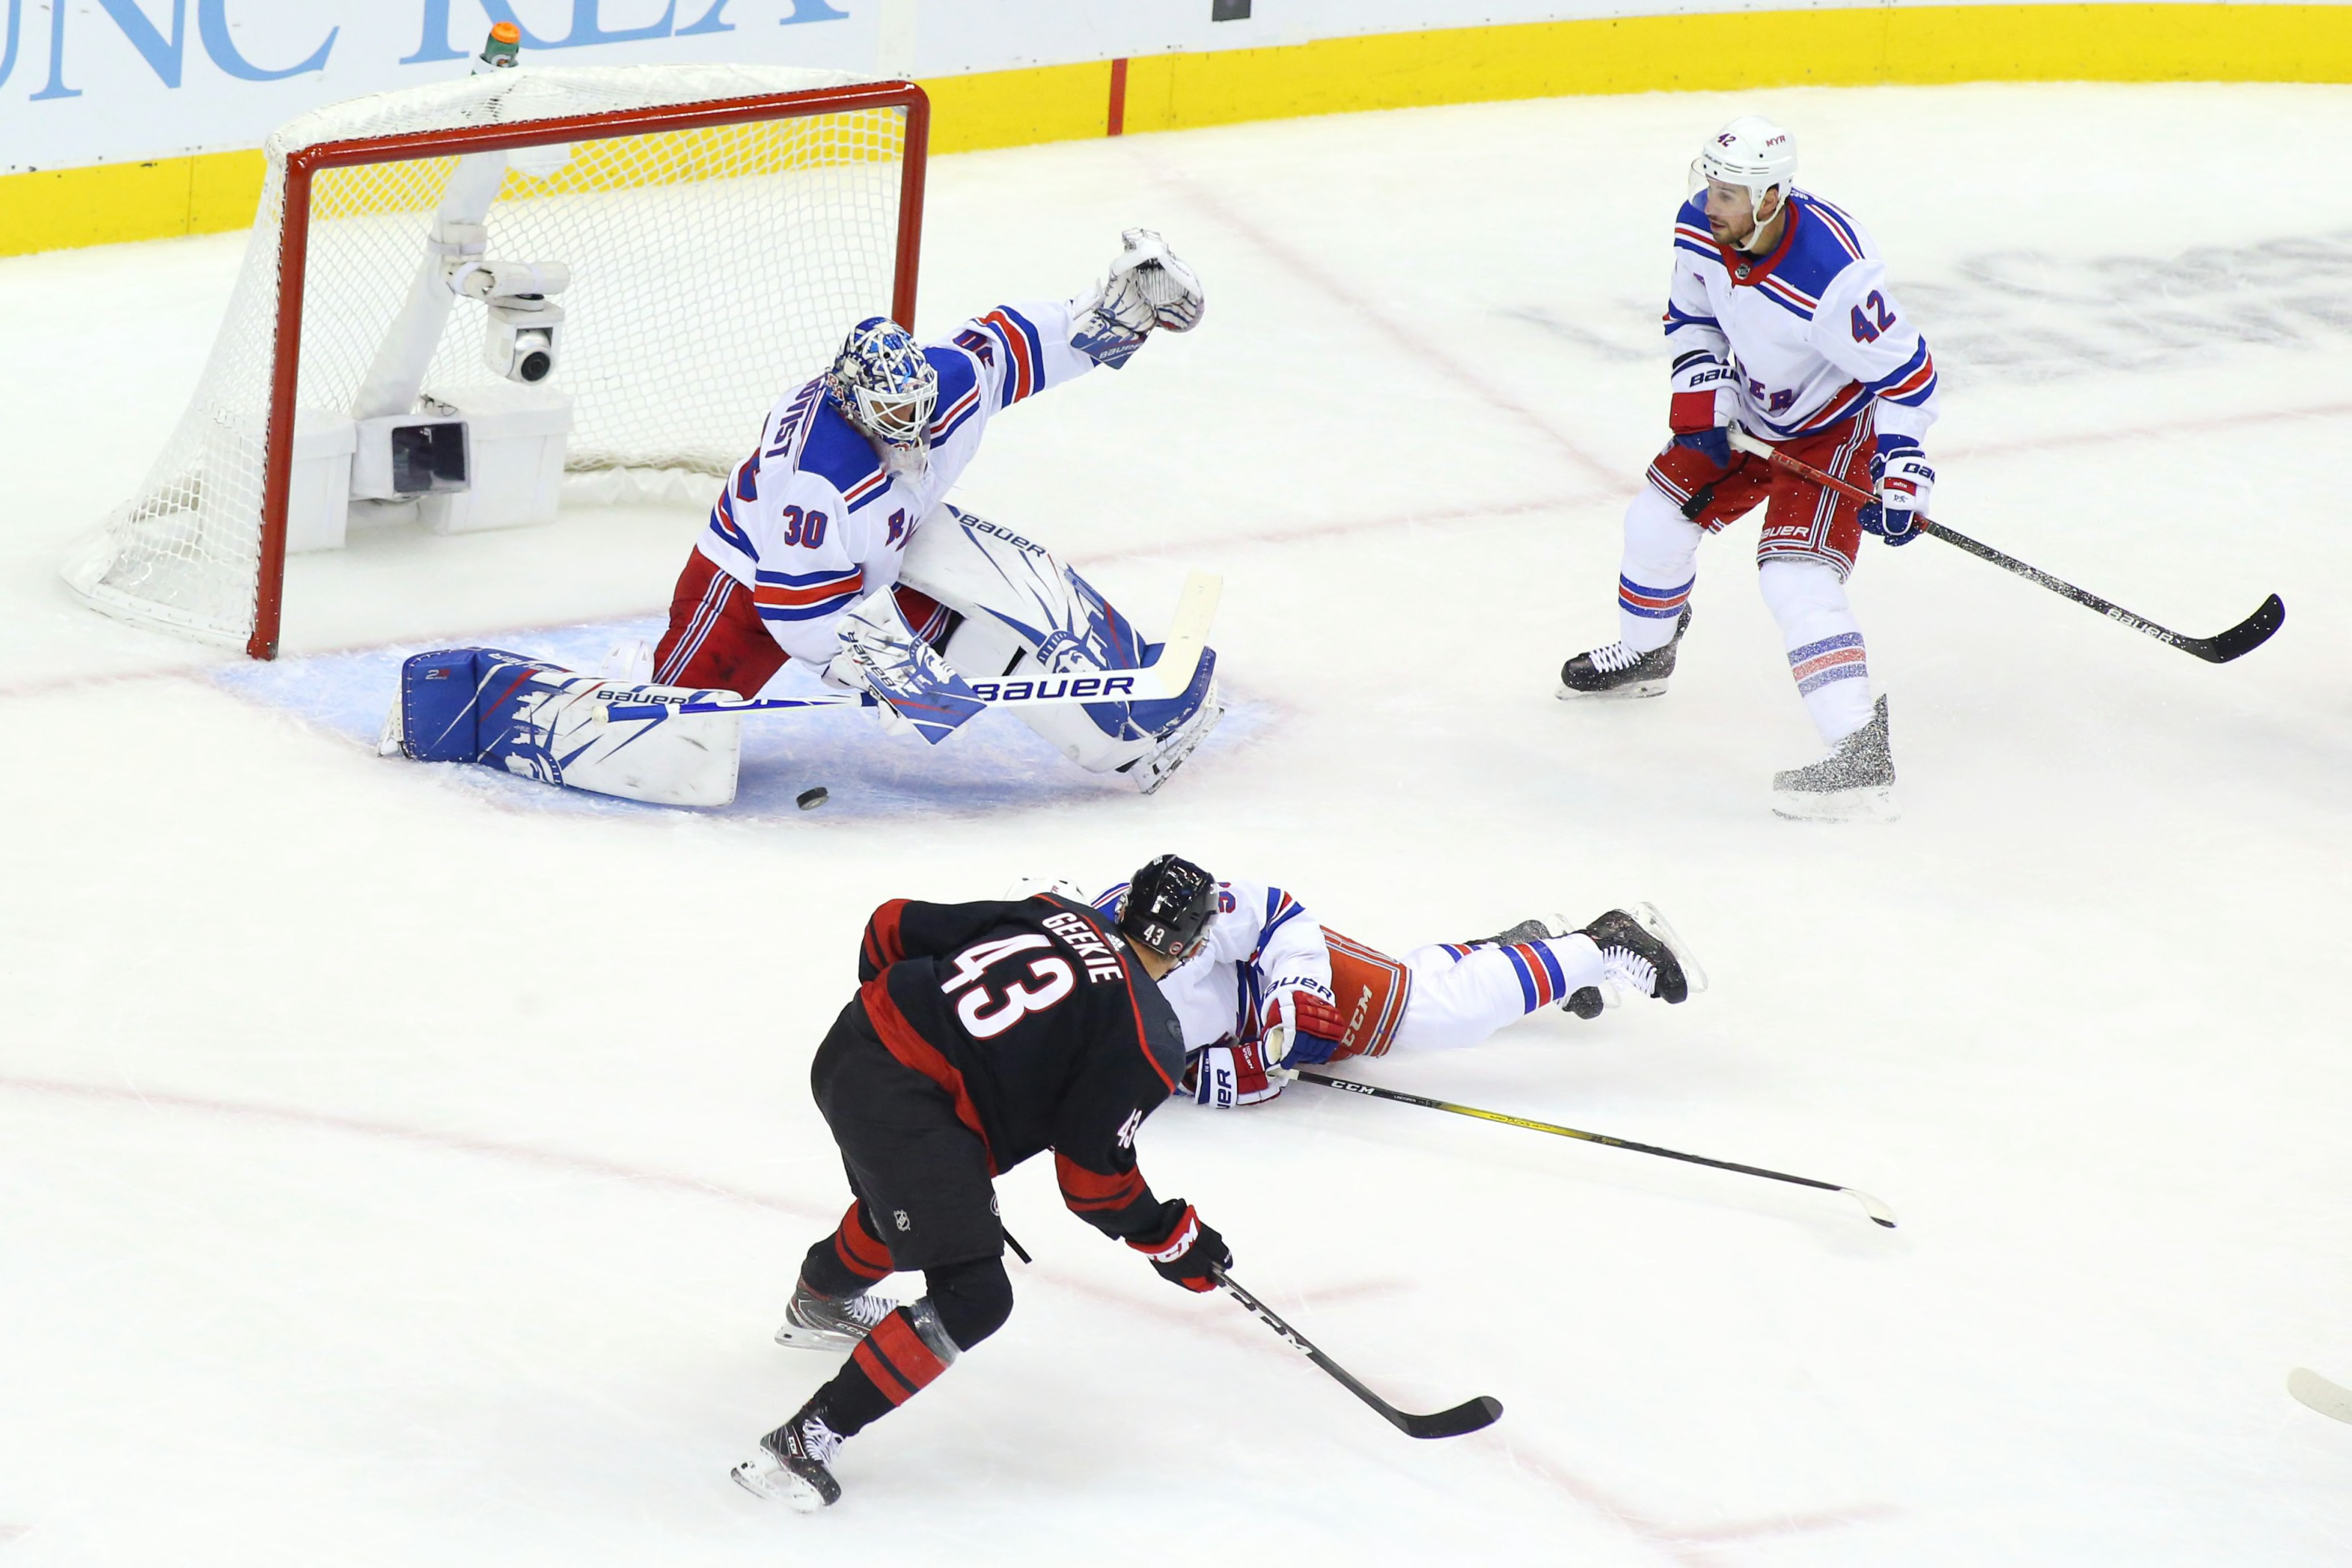 Morgan Geekie scores twice in NHL debut as Hurricanes hammer Penguins